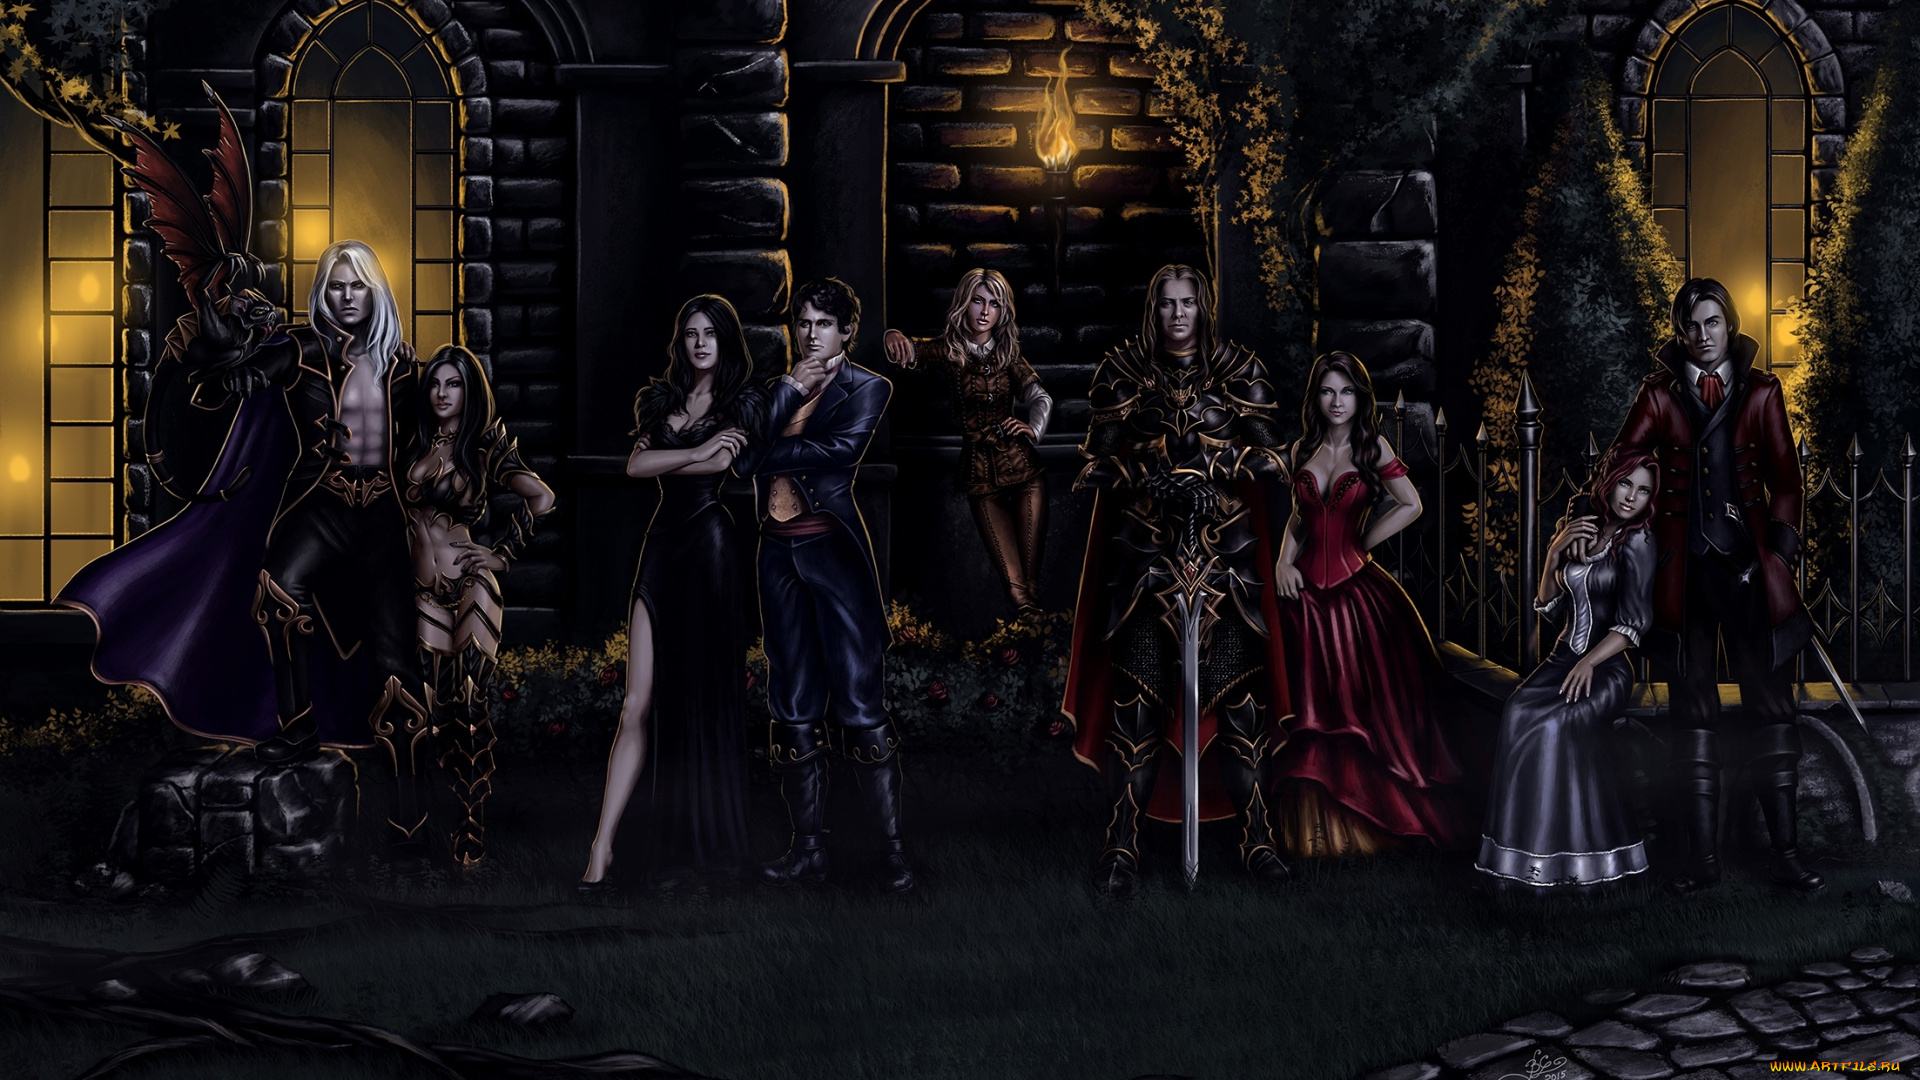 фэнтези, люди, женщины, ночь, меч, рыцарь, костюмы, факел, замок, мужчины, мистика, вампир, арт